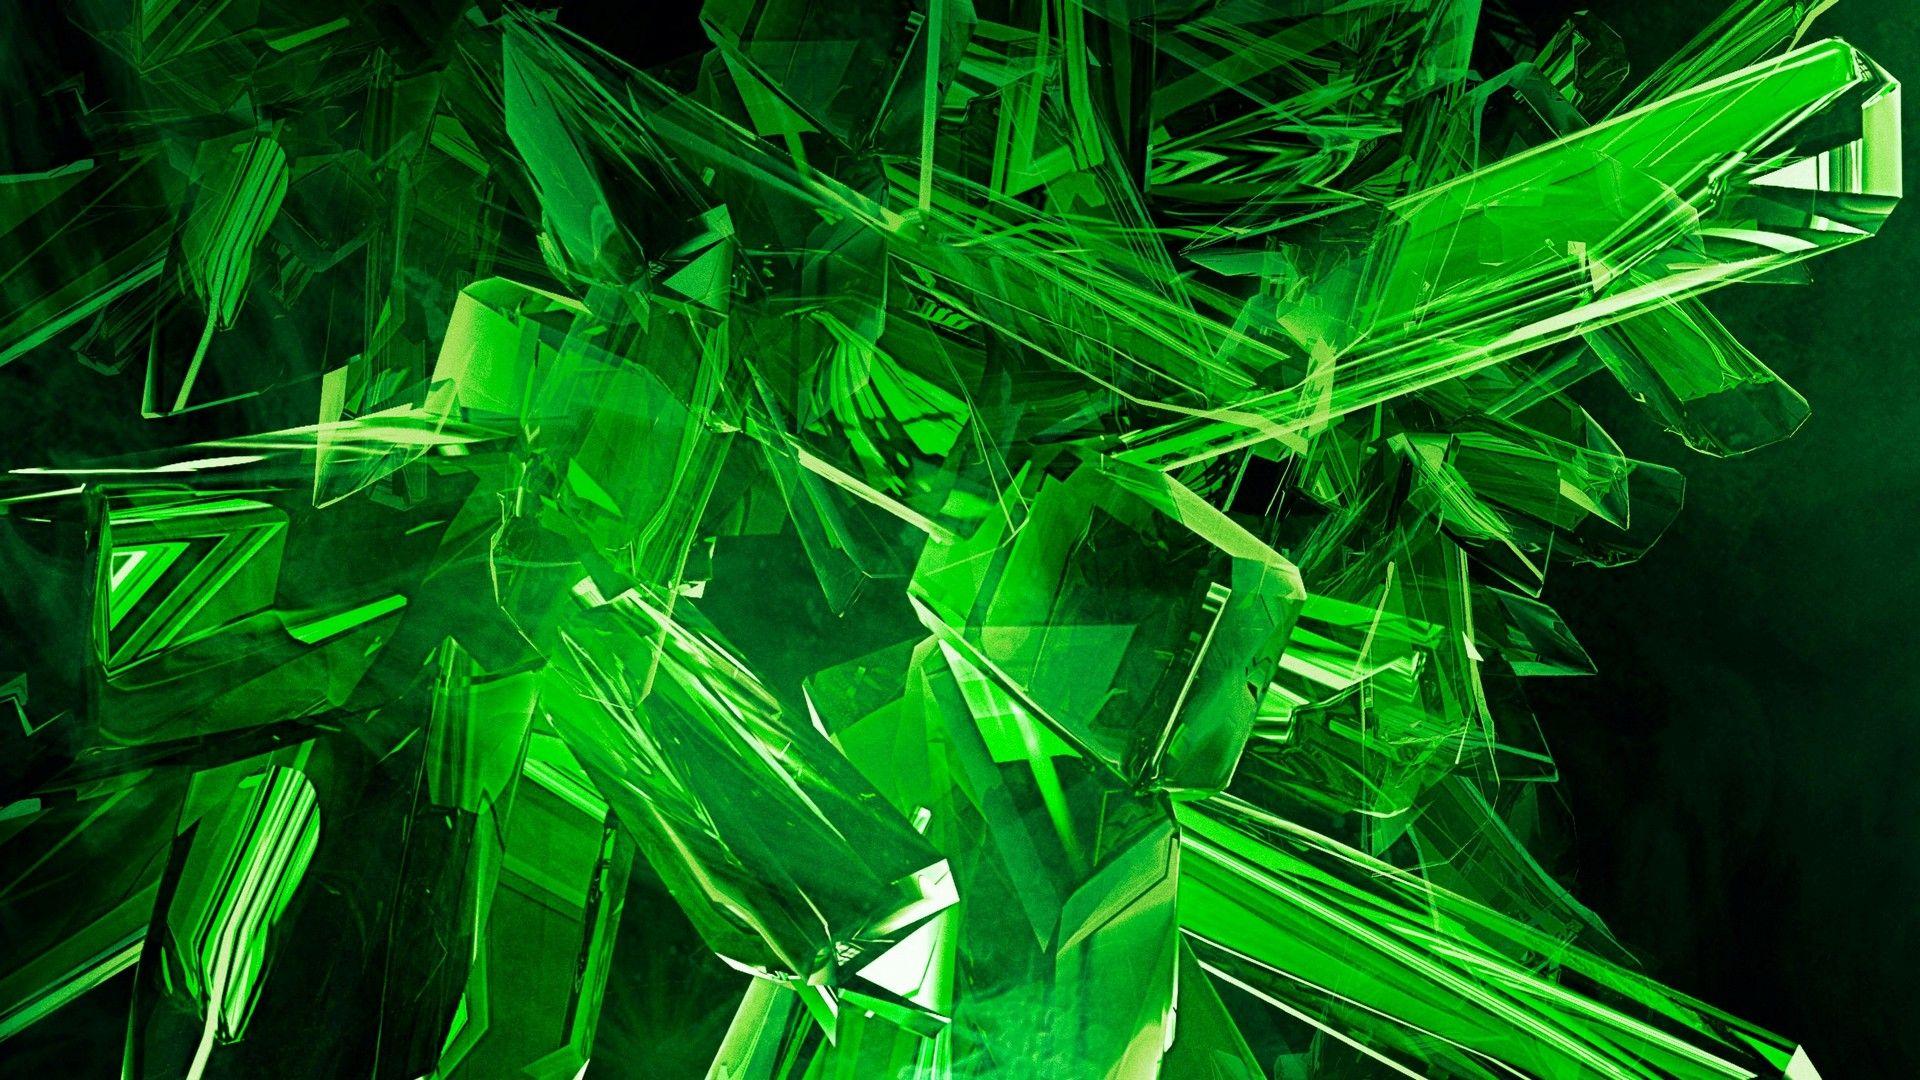 Neon Green Aesthetic Desktop Wallpapers Top Free Neon Green Aesthetic Desktop Backgrounds Wallpaperaccess Neo cyber police robot 5k. neon green aesthetic desktop wallpapers